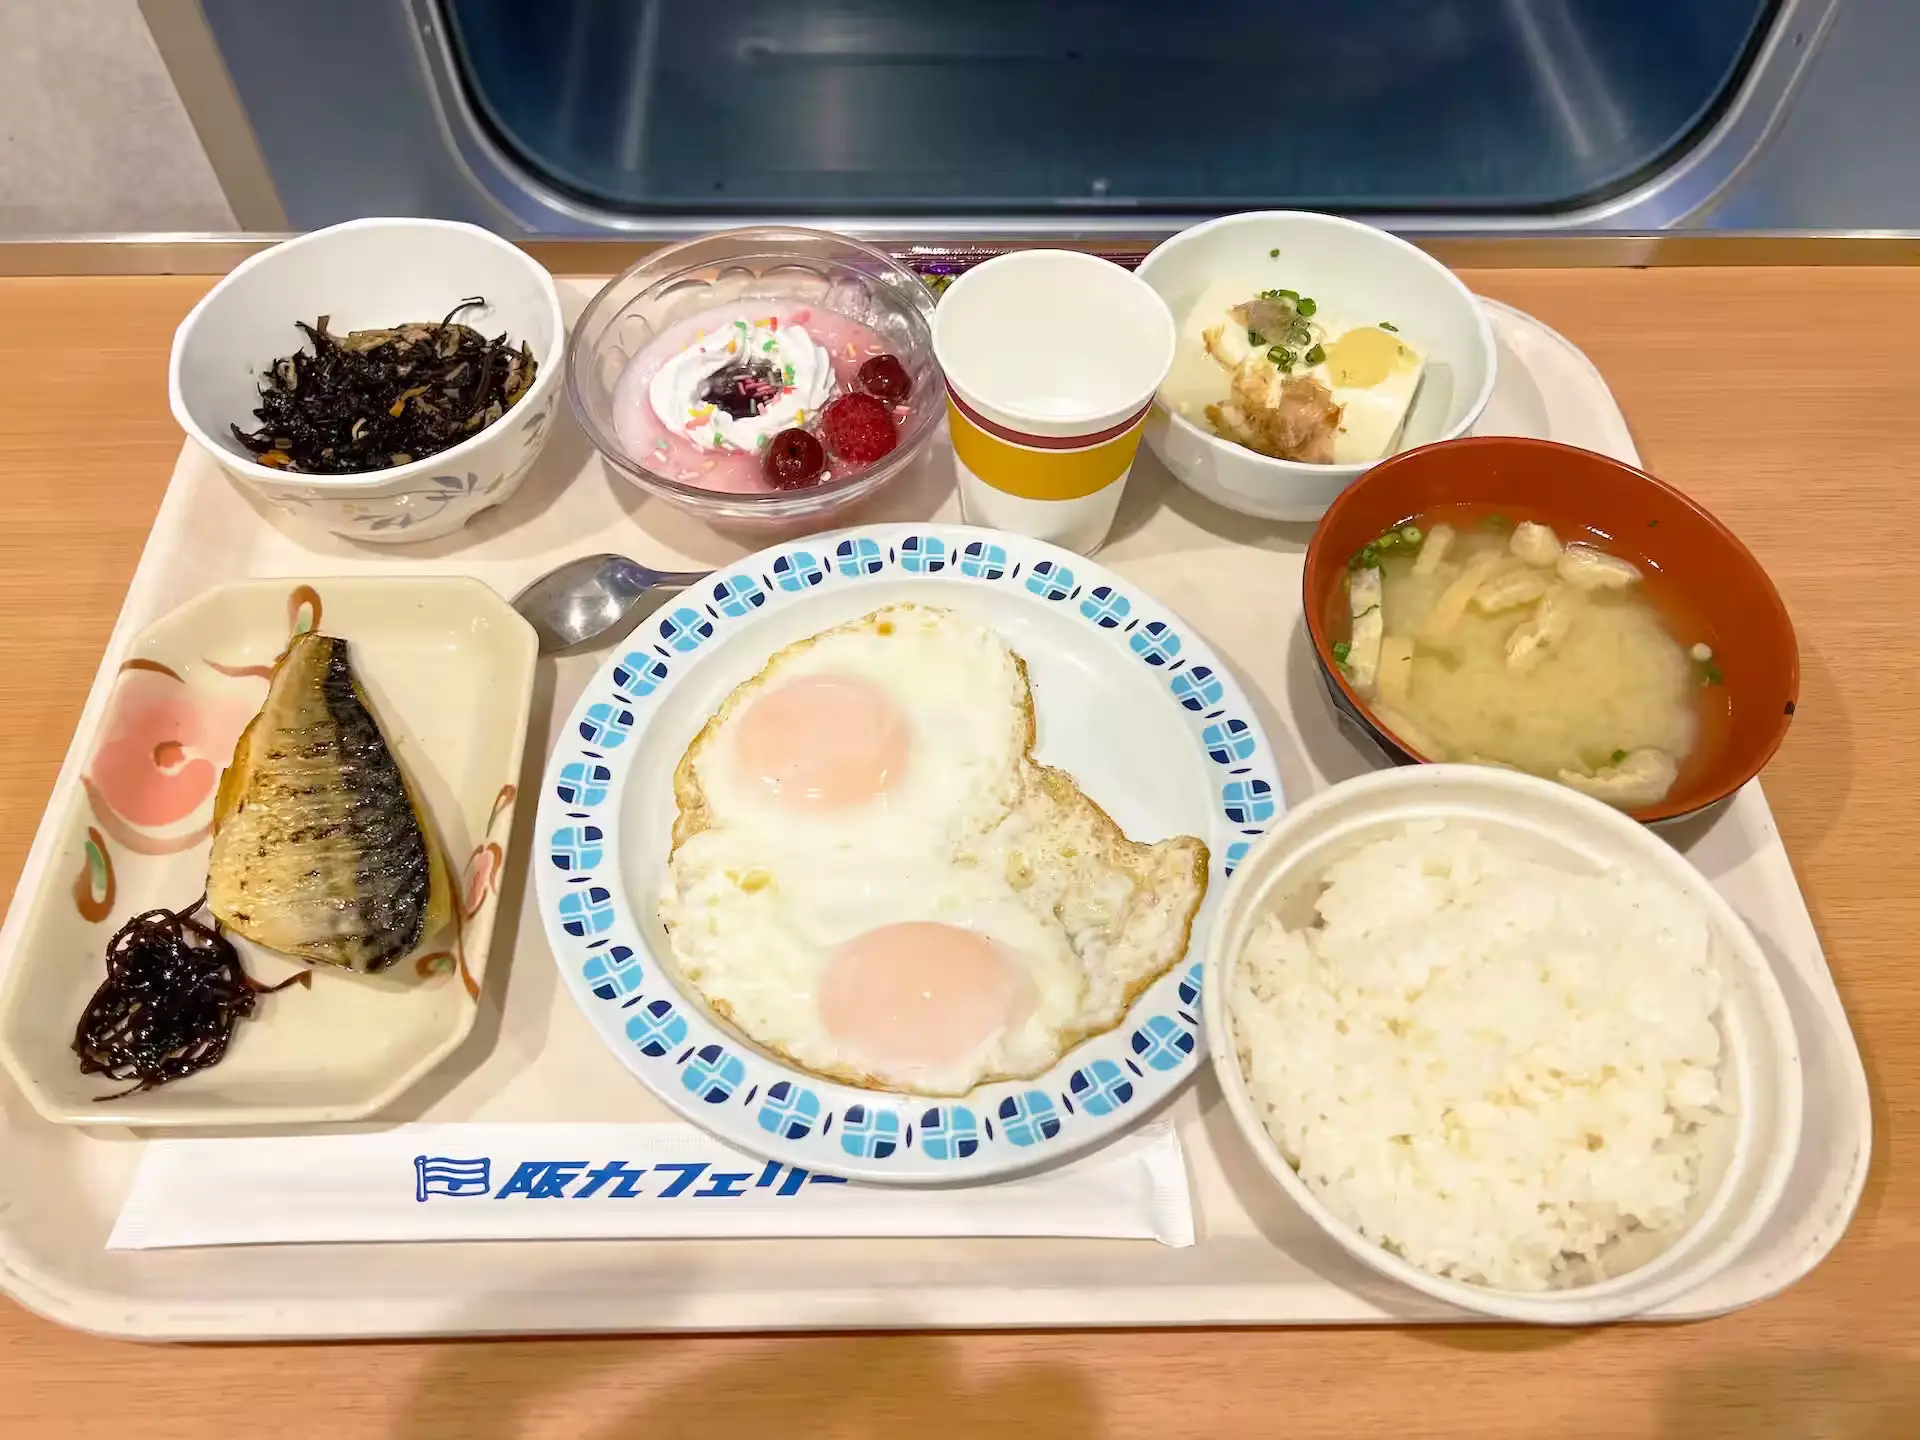 阪九轮渡響船上餐厅早餐菜单